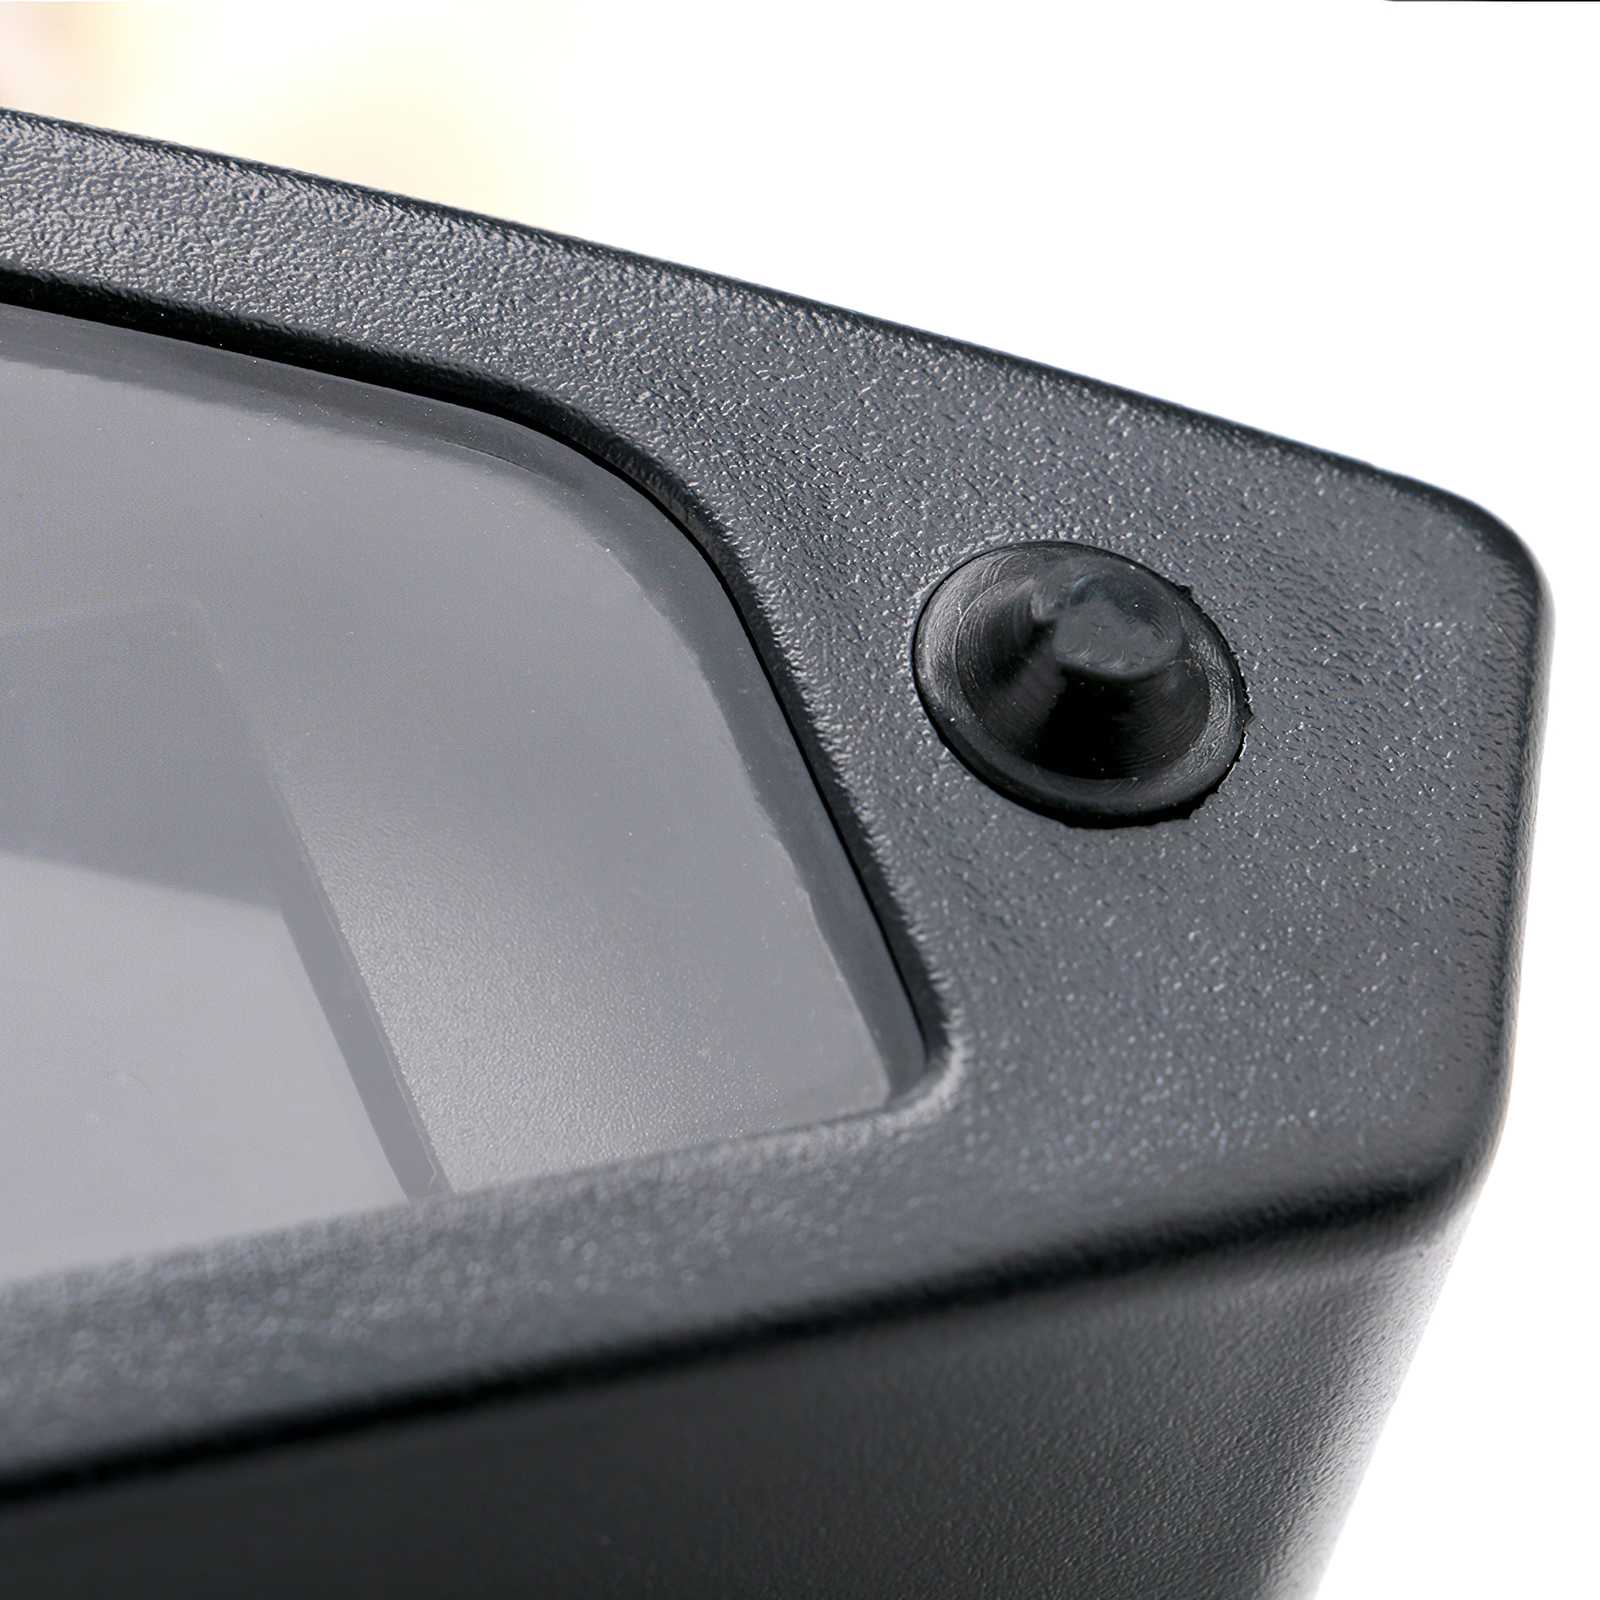 Motorcycle Digital Speedometer, Motorcycle Digital Speedometer Black Motorbike Tachometer LCD odometer Gauge Universal Ometer with Sensor fit for Motorcycle Repair Refit